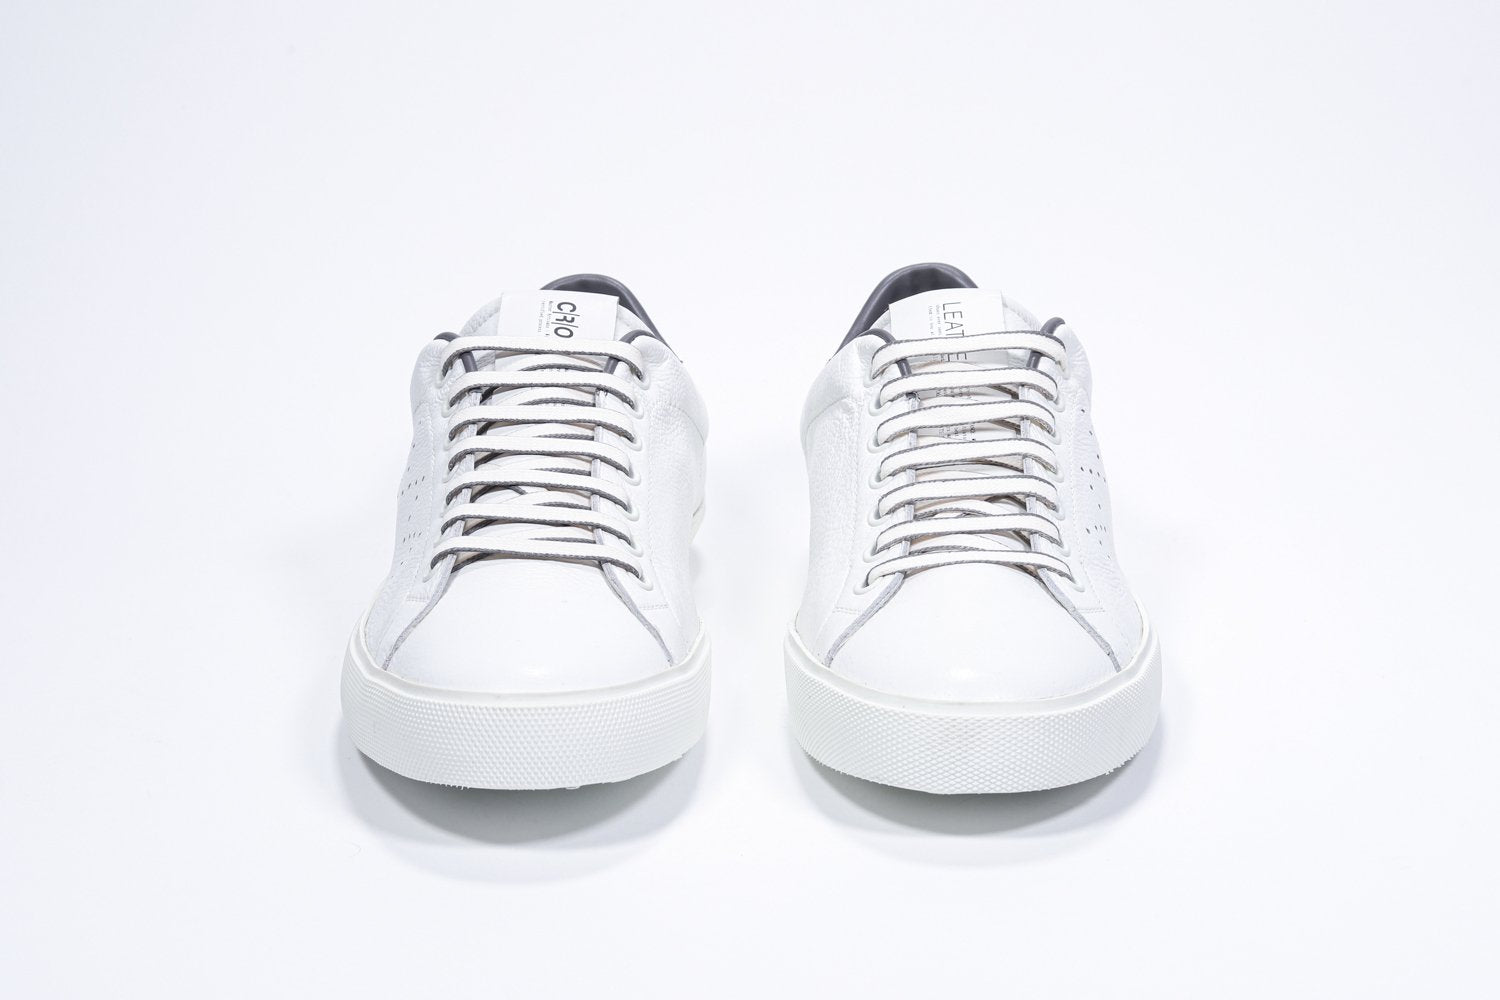 Vorderansicht des weißen Low Top sneaker mit dunkelgrauen Details und perforiertem Kronenlogo auf dem Obermaterial. Obermaterial aus Vollleder und weiße Gummisohle.